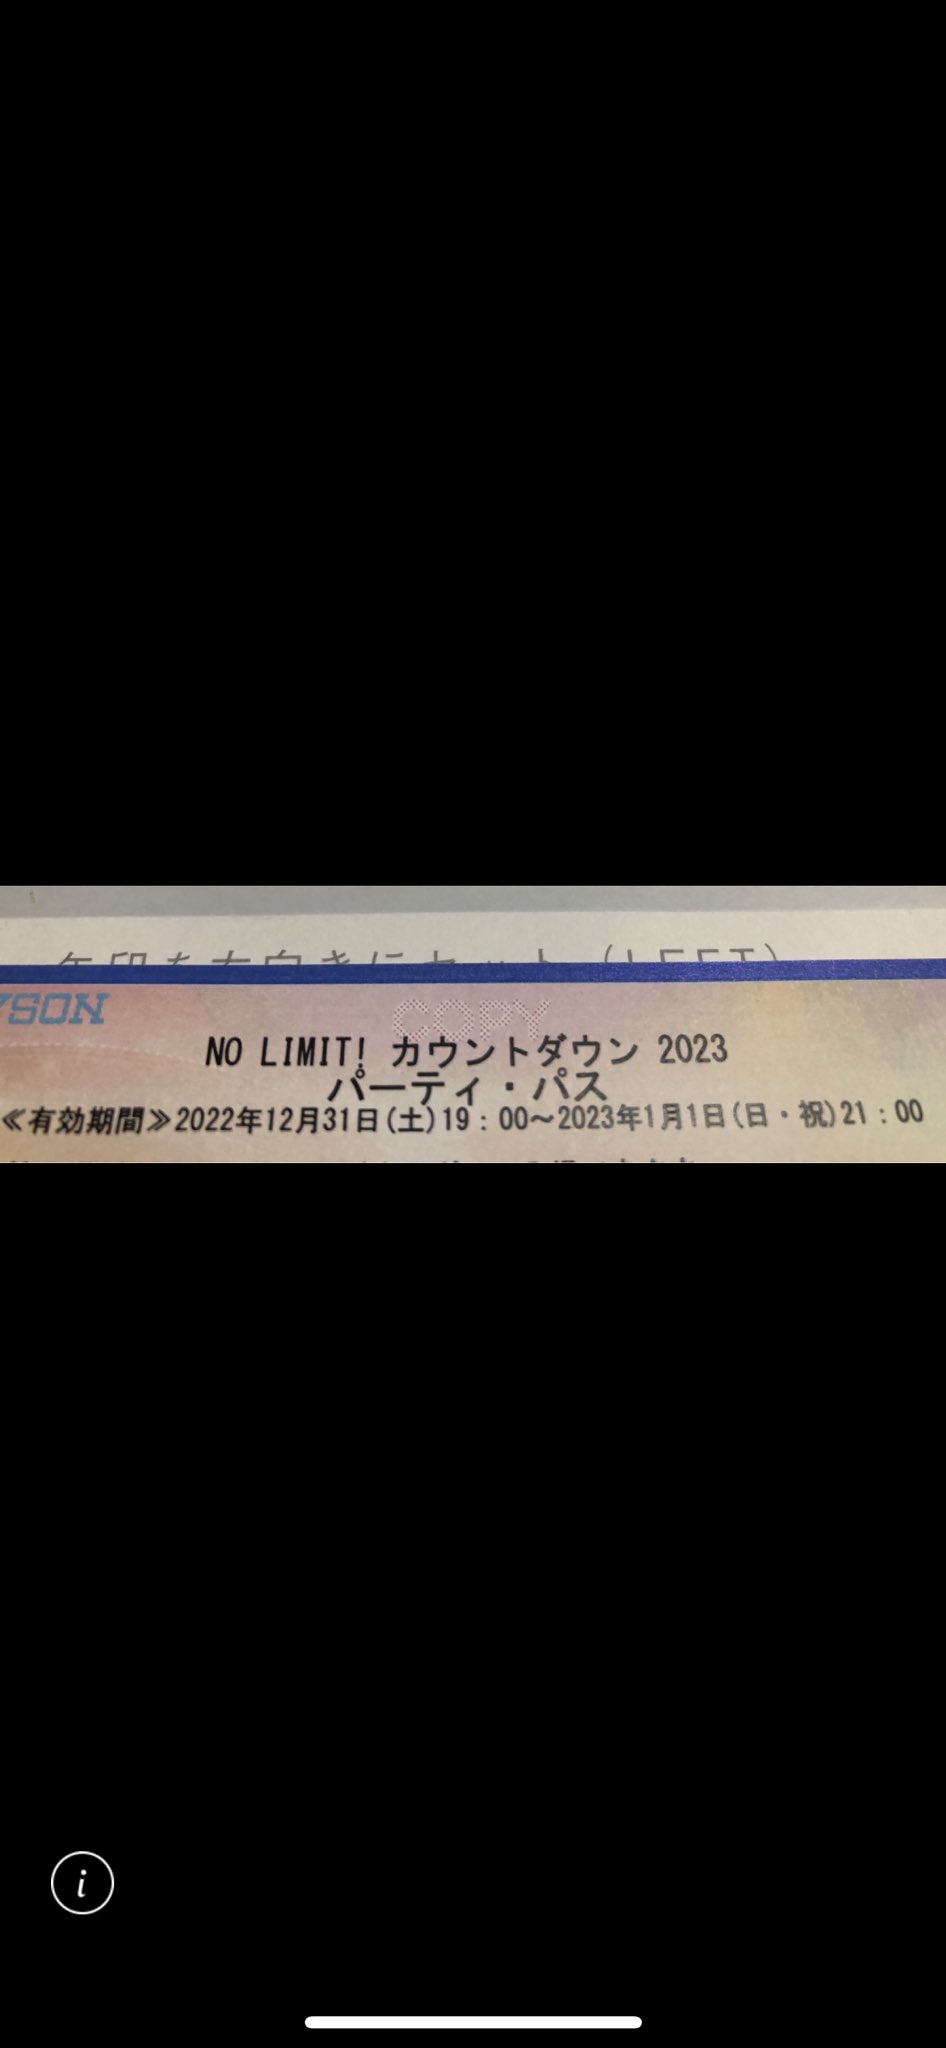 USJ ユニバーサルスタジオジャパン カウントダウン 2023 チケット 2枚